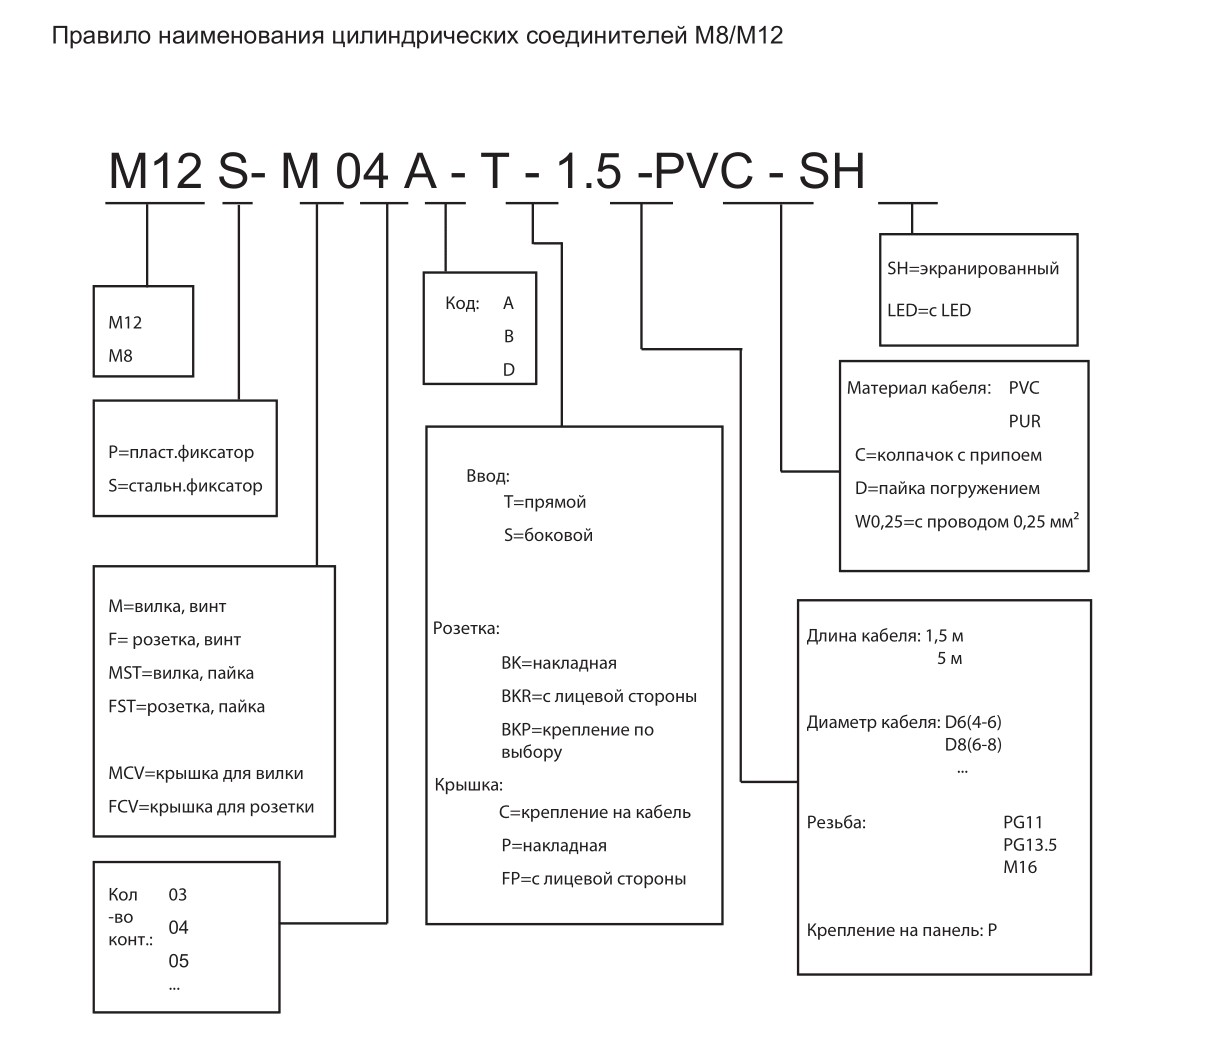 Цилиндрический соединитель-розетка M8-F04-BKR-M8-D4.7 1620043241012: Структура обозначения